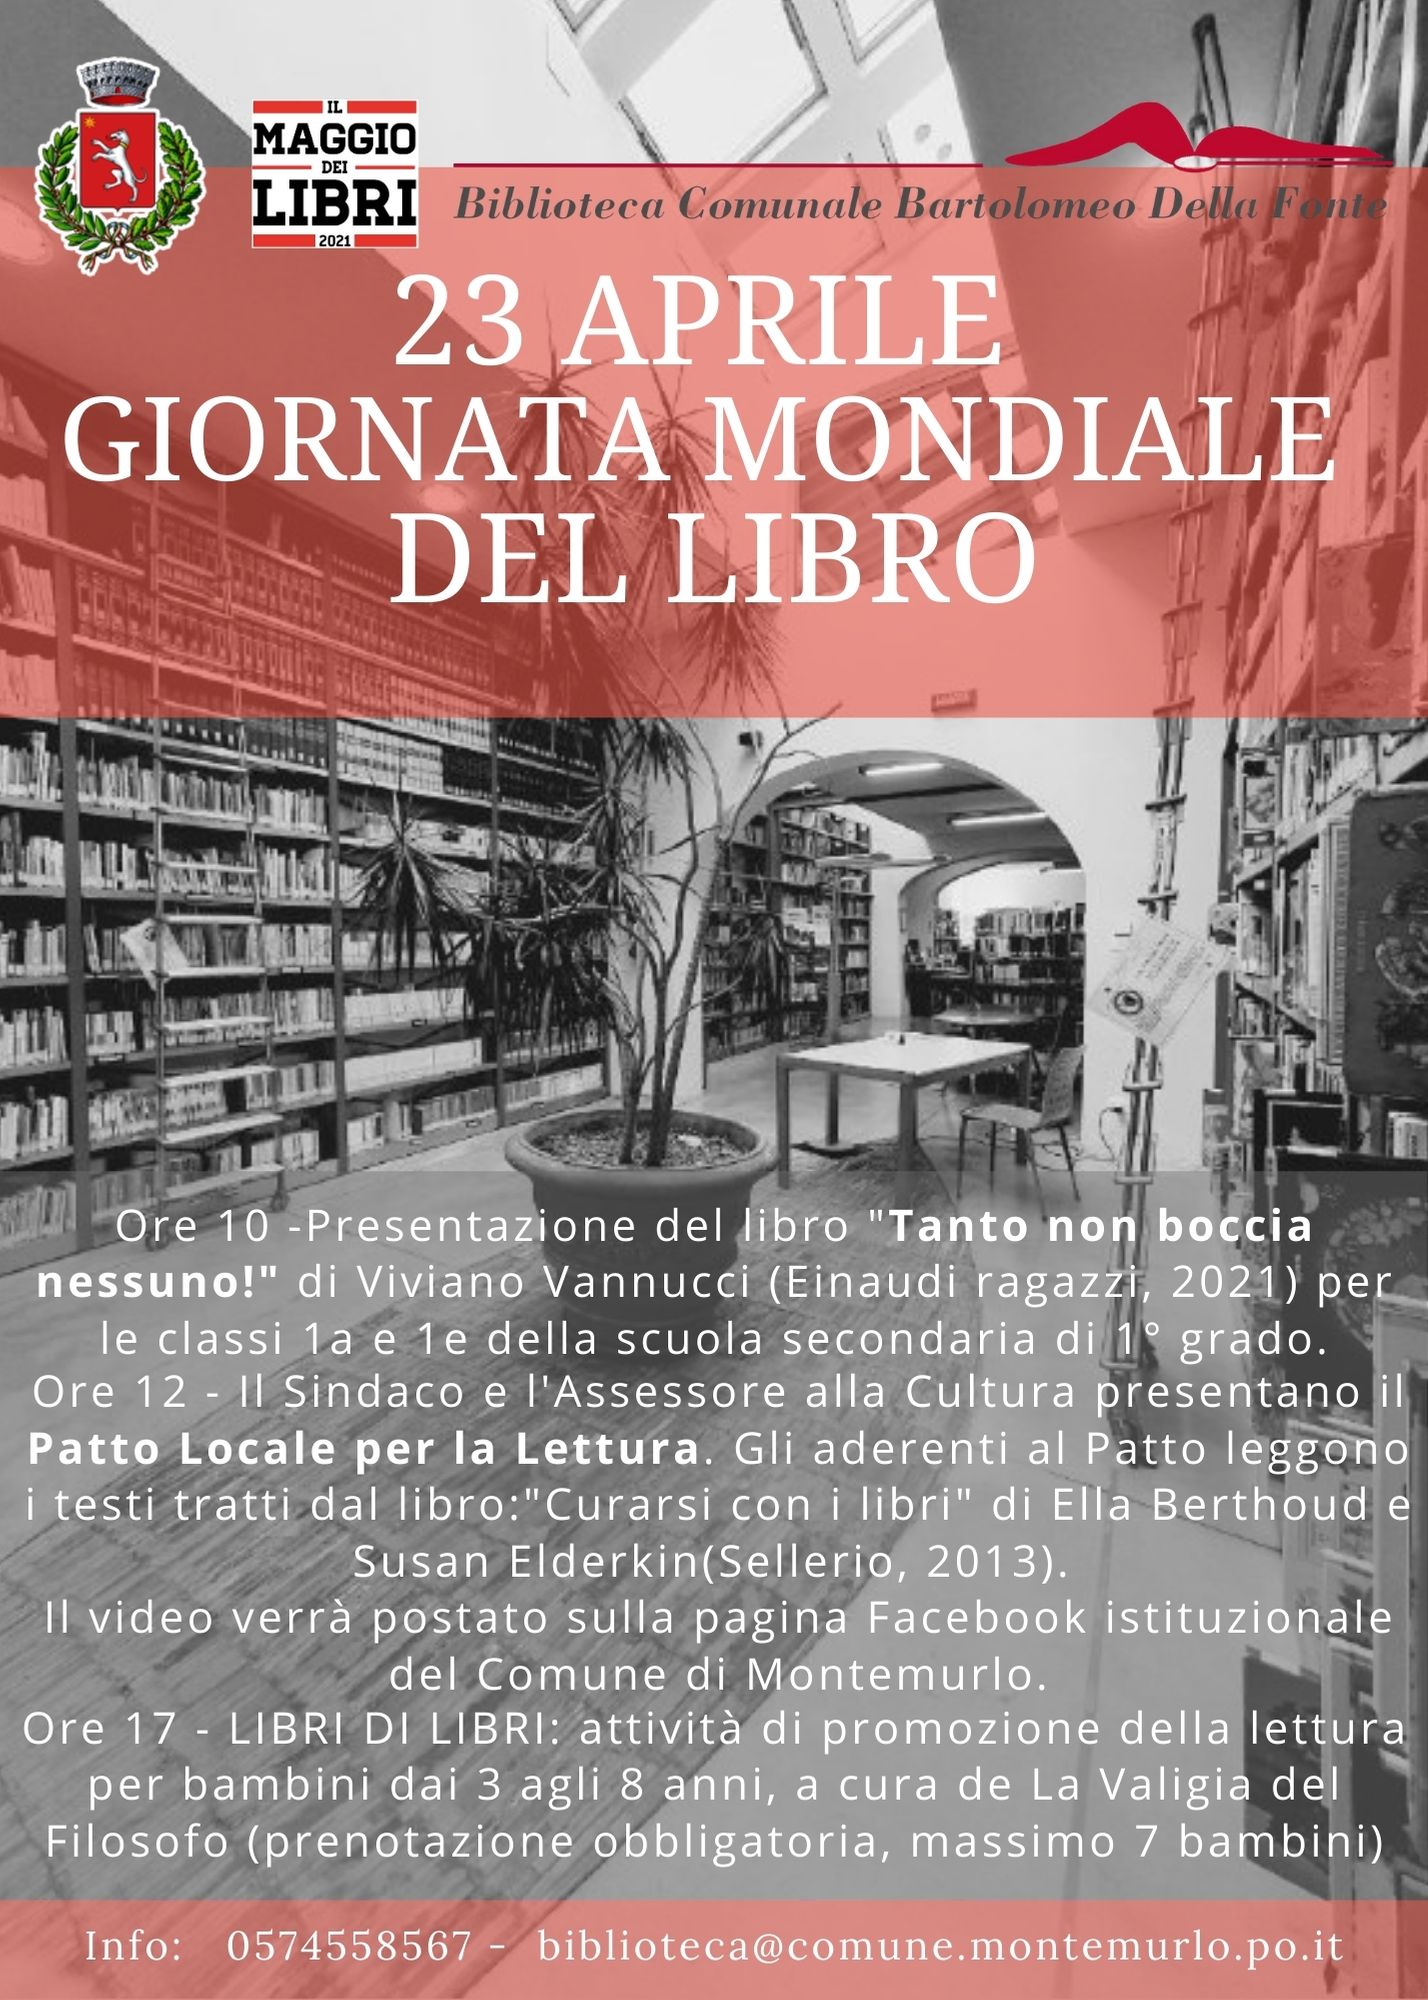 Montemurlo celebra la Giornata mondiale del libro, locandina